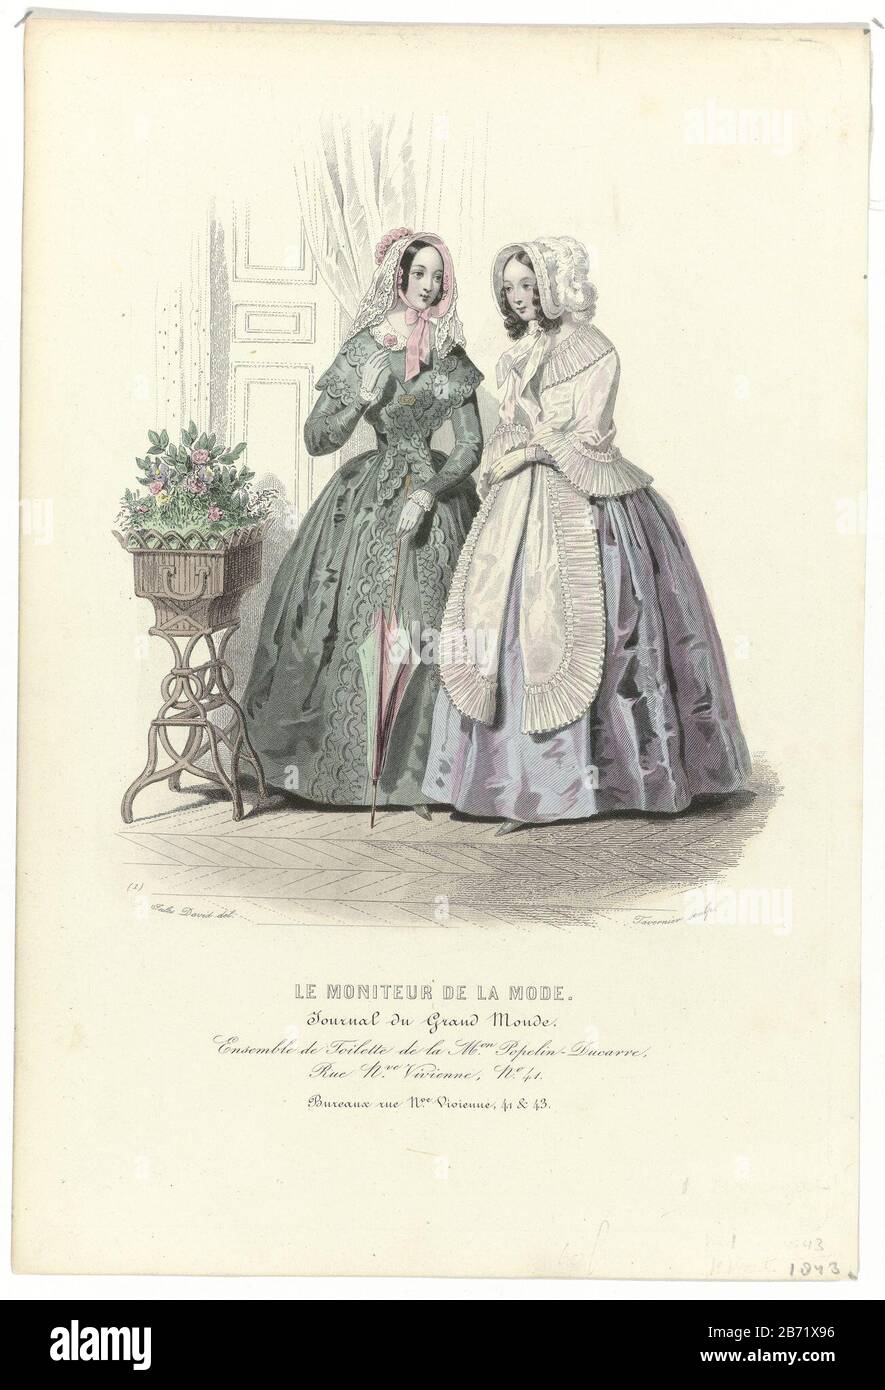 Le Moniteur de la Mode, 1843, Nr. 1 Ensemble de Toilette () Zwei Frauen im  Inneren. Links: Kleid mit durchgehängtem Saum und Loopen-Motiv.  Accessoires: Poke Bonnet mit Blumen und Schleier, Handschuhe, Brosche